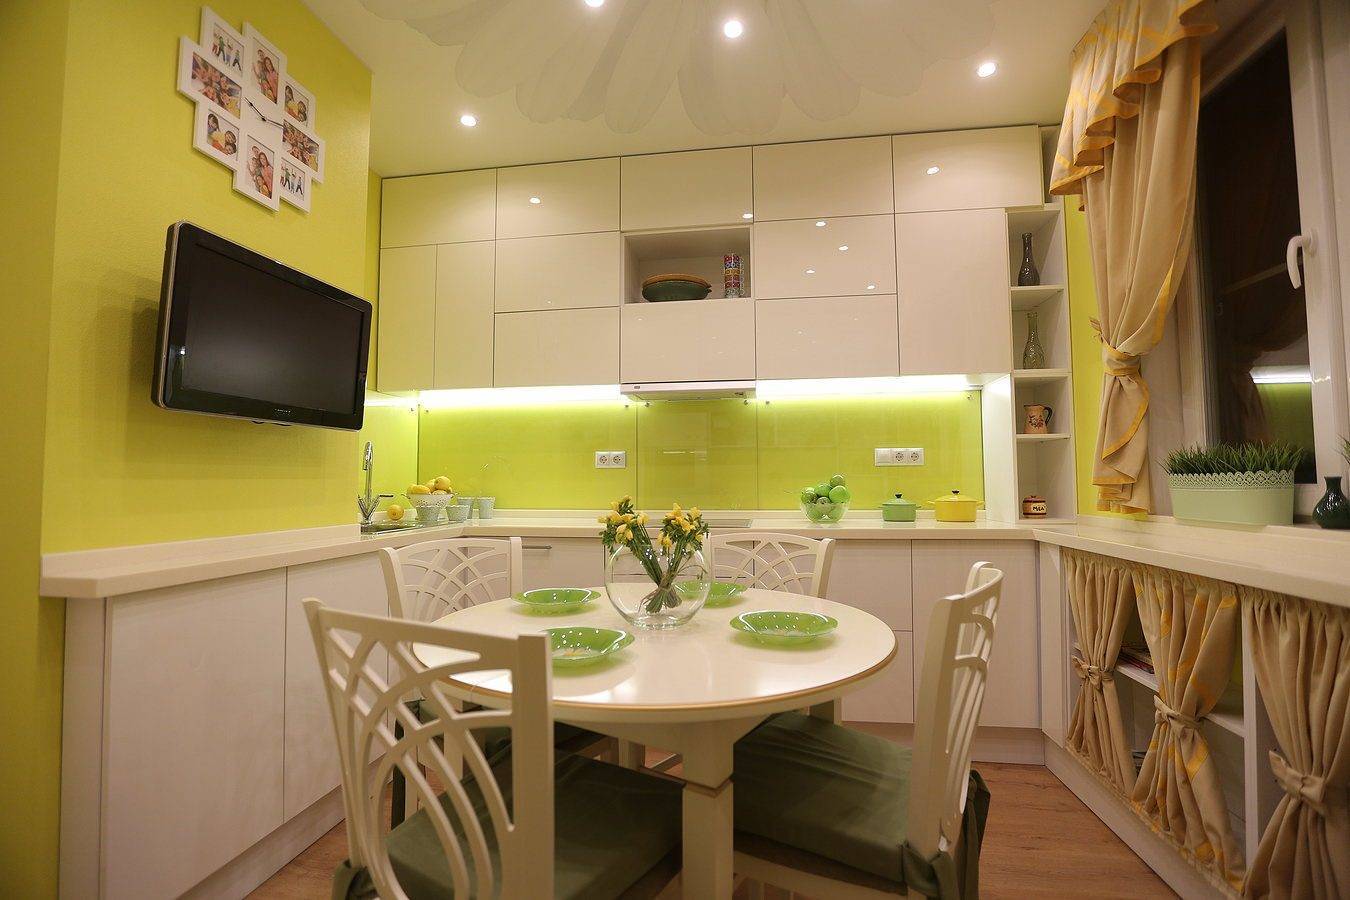 Дизайн потолка на кухне - современные решения стильного и практичного оформления интерьера кухни